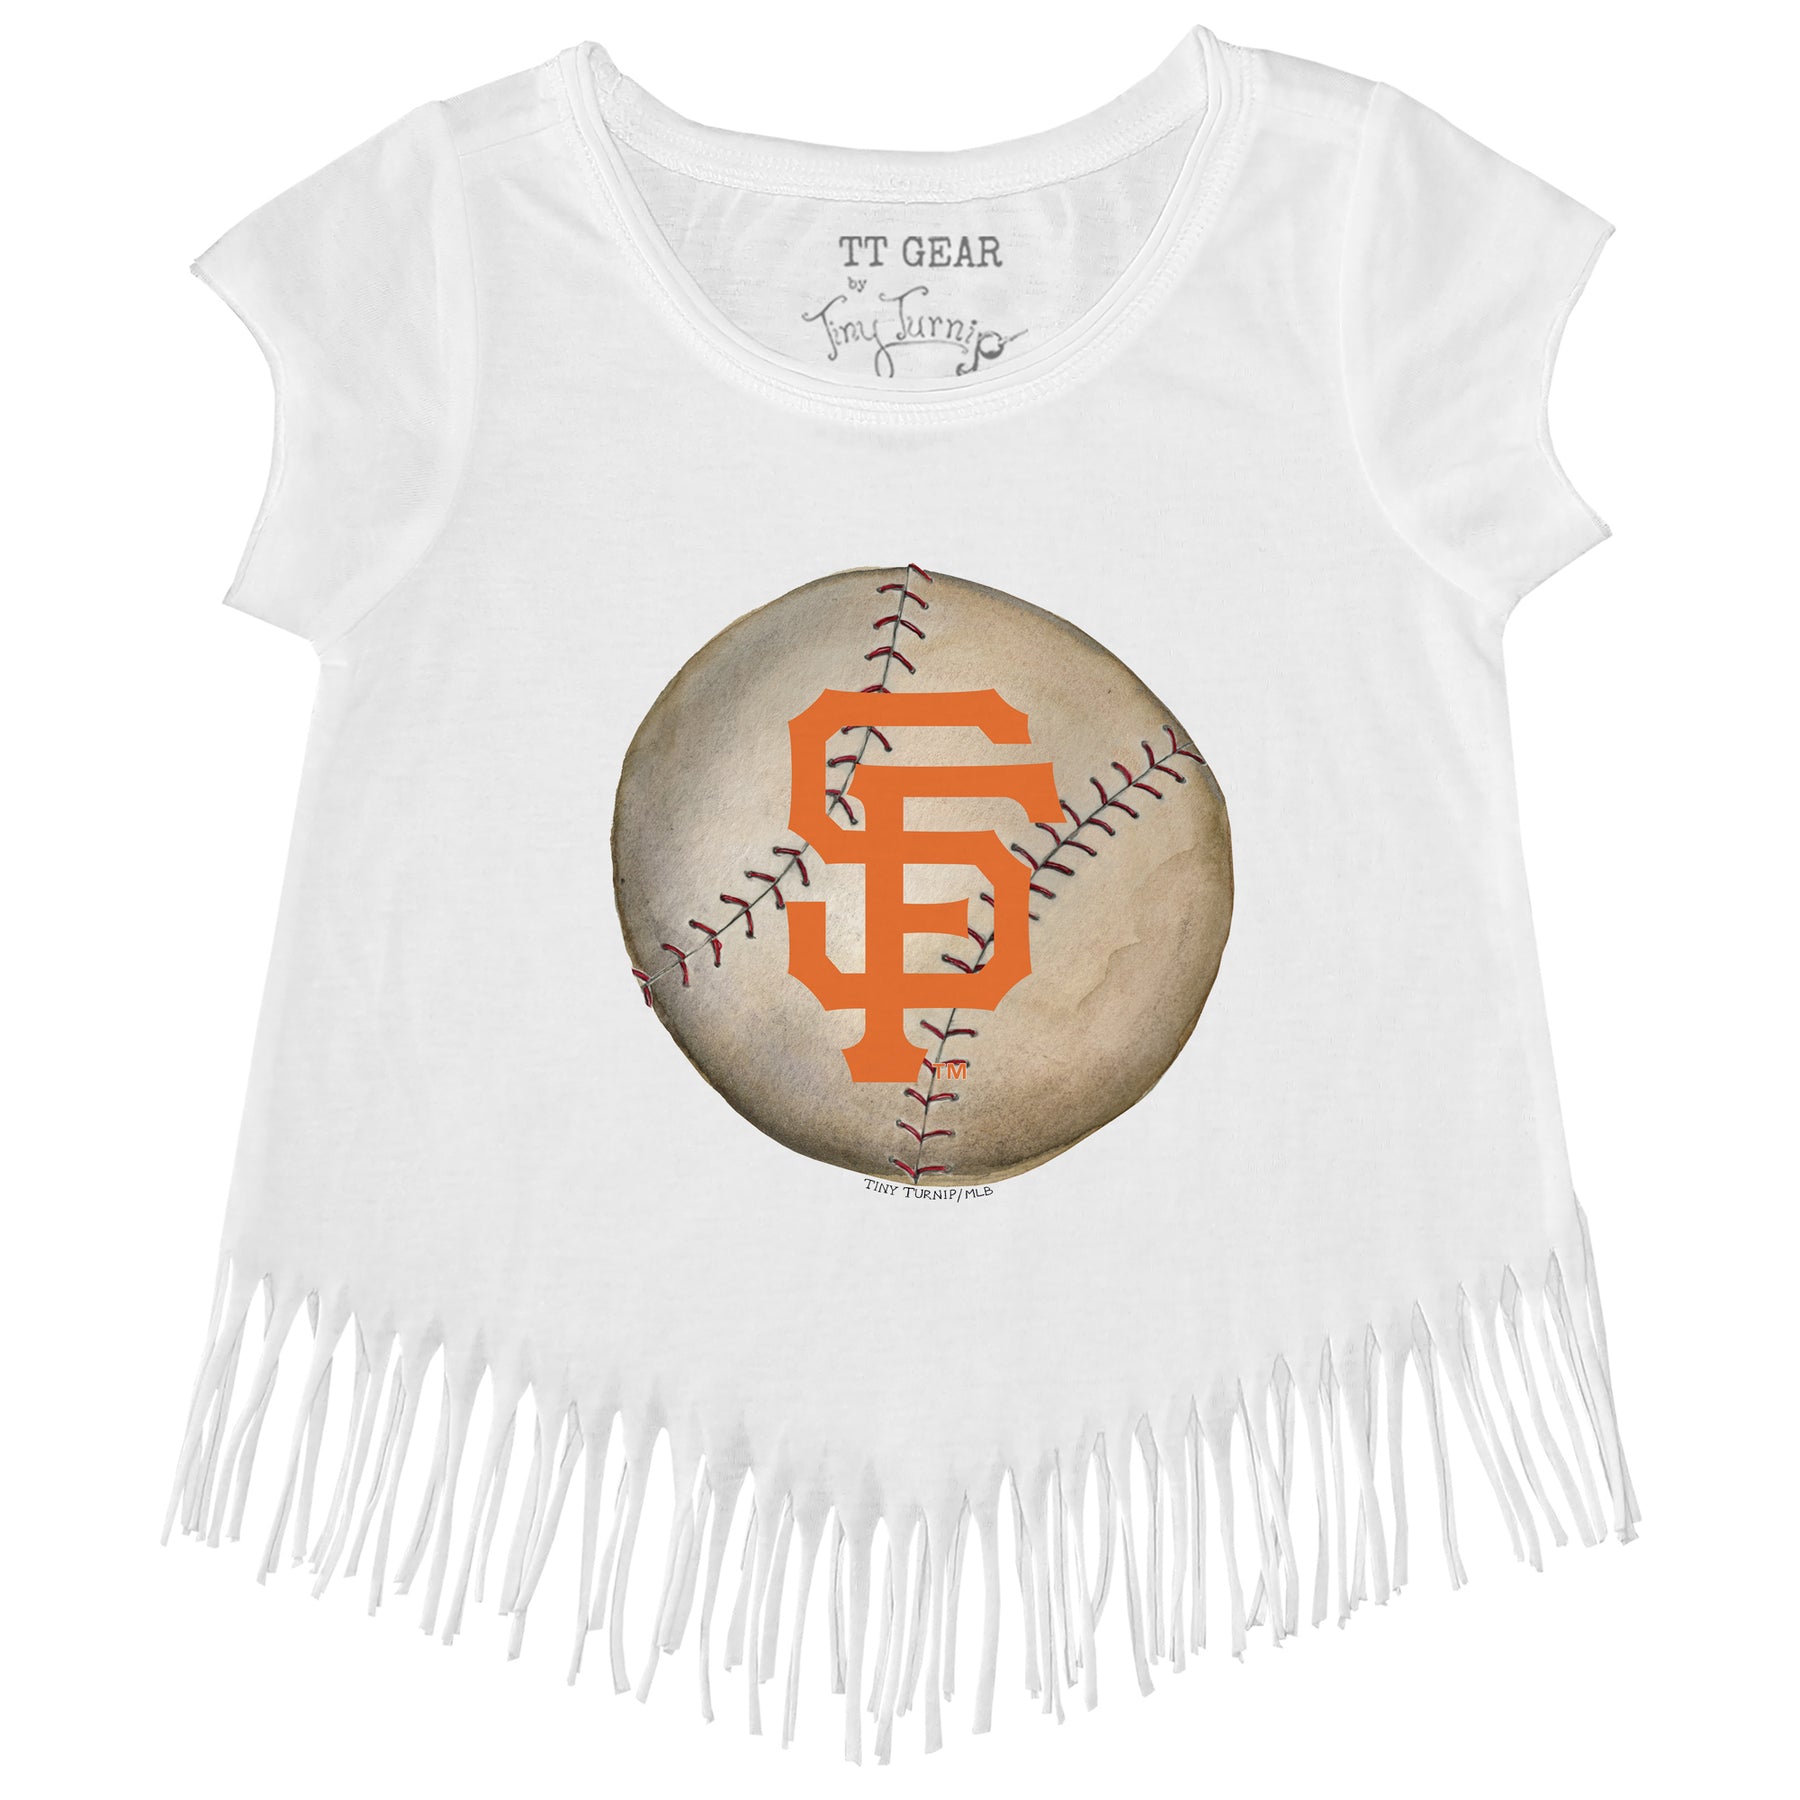 San Francisco Giants Stitched Baseball Fringe Tee